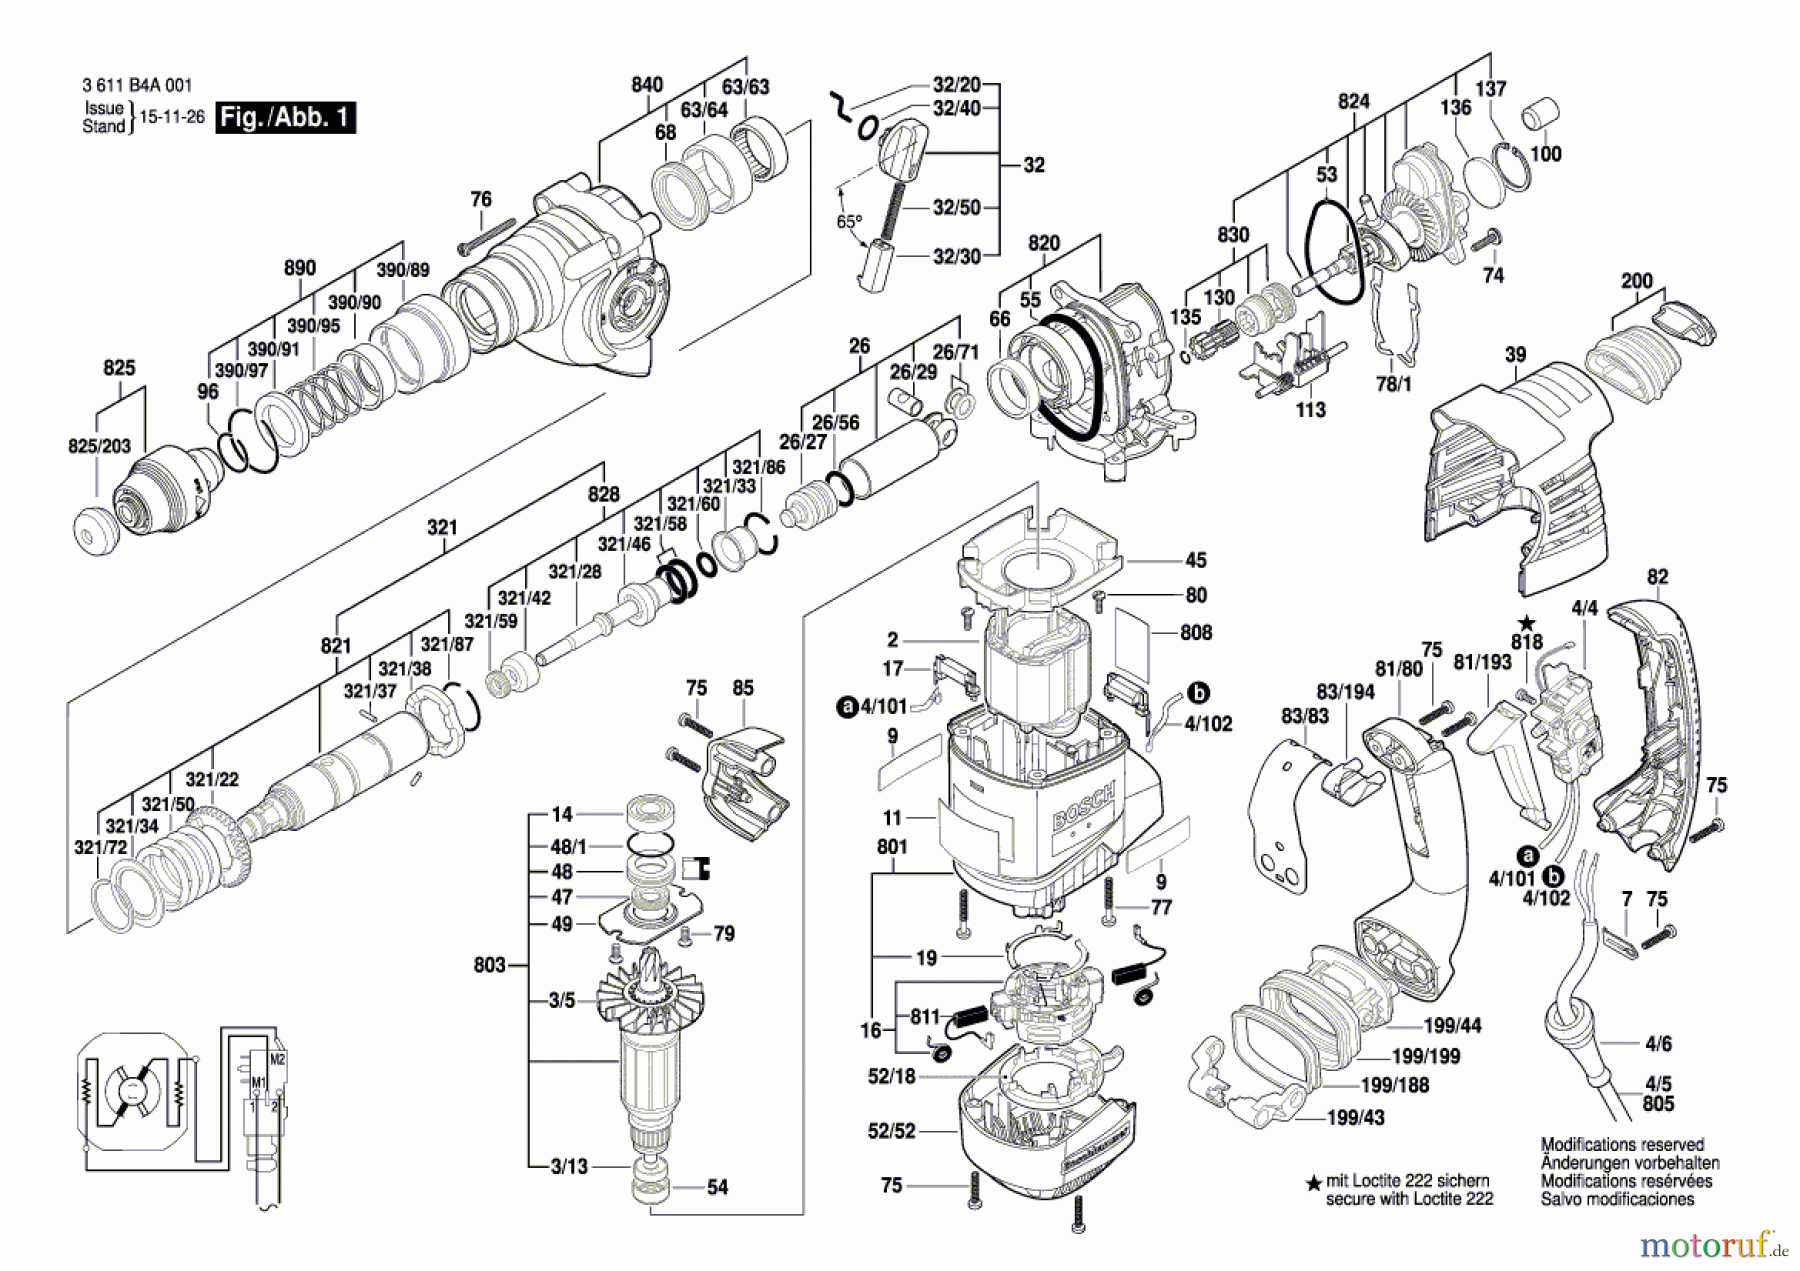  Bosch Werkzeug Bohrhammer GBH 3-28 DFR Seite 1